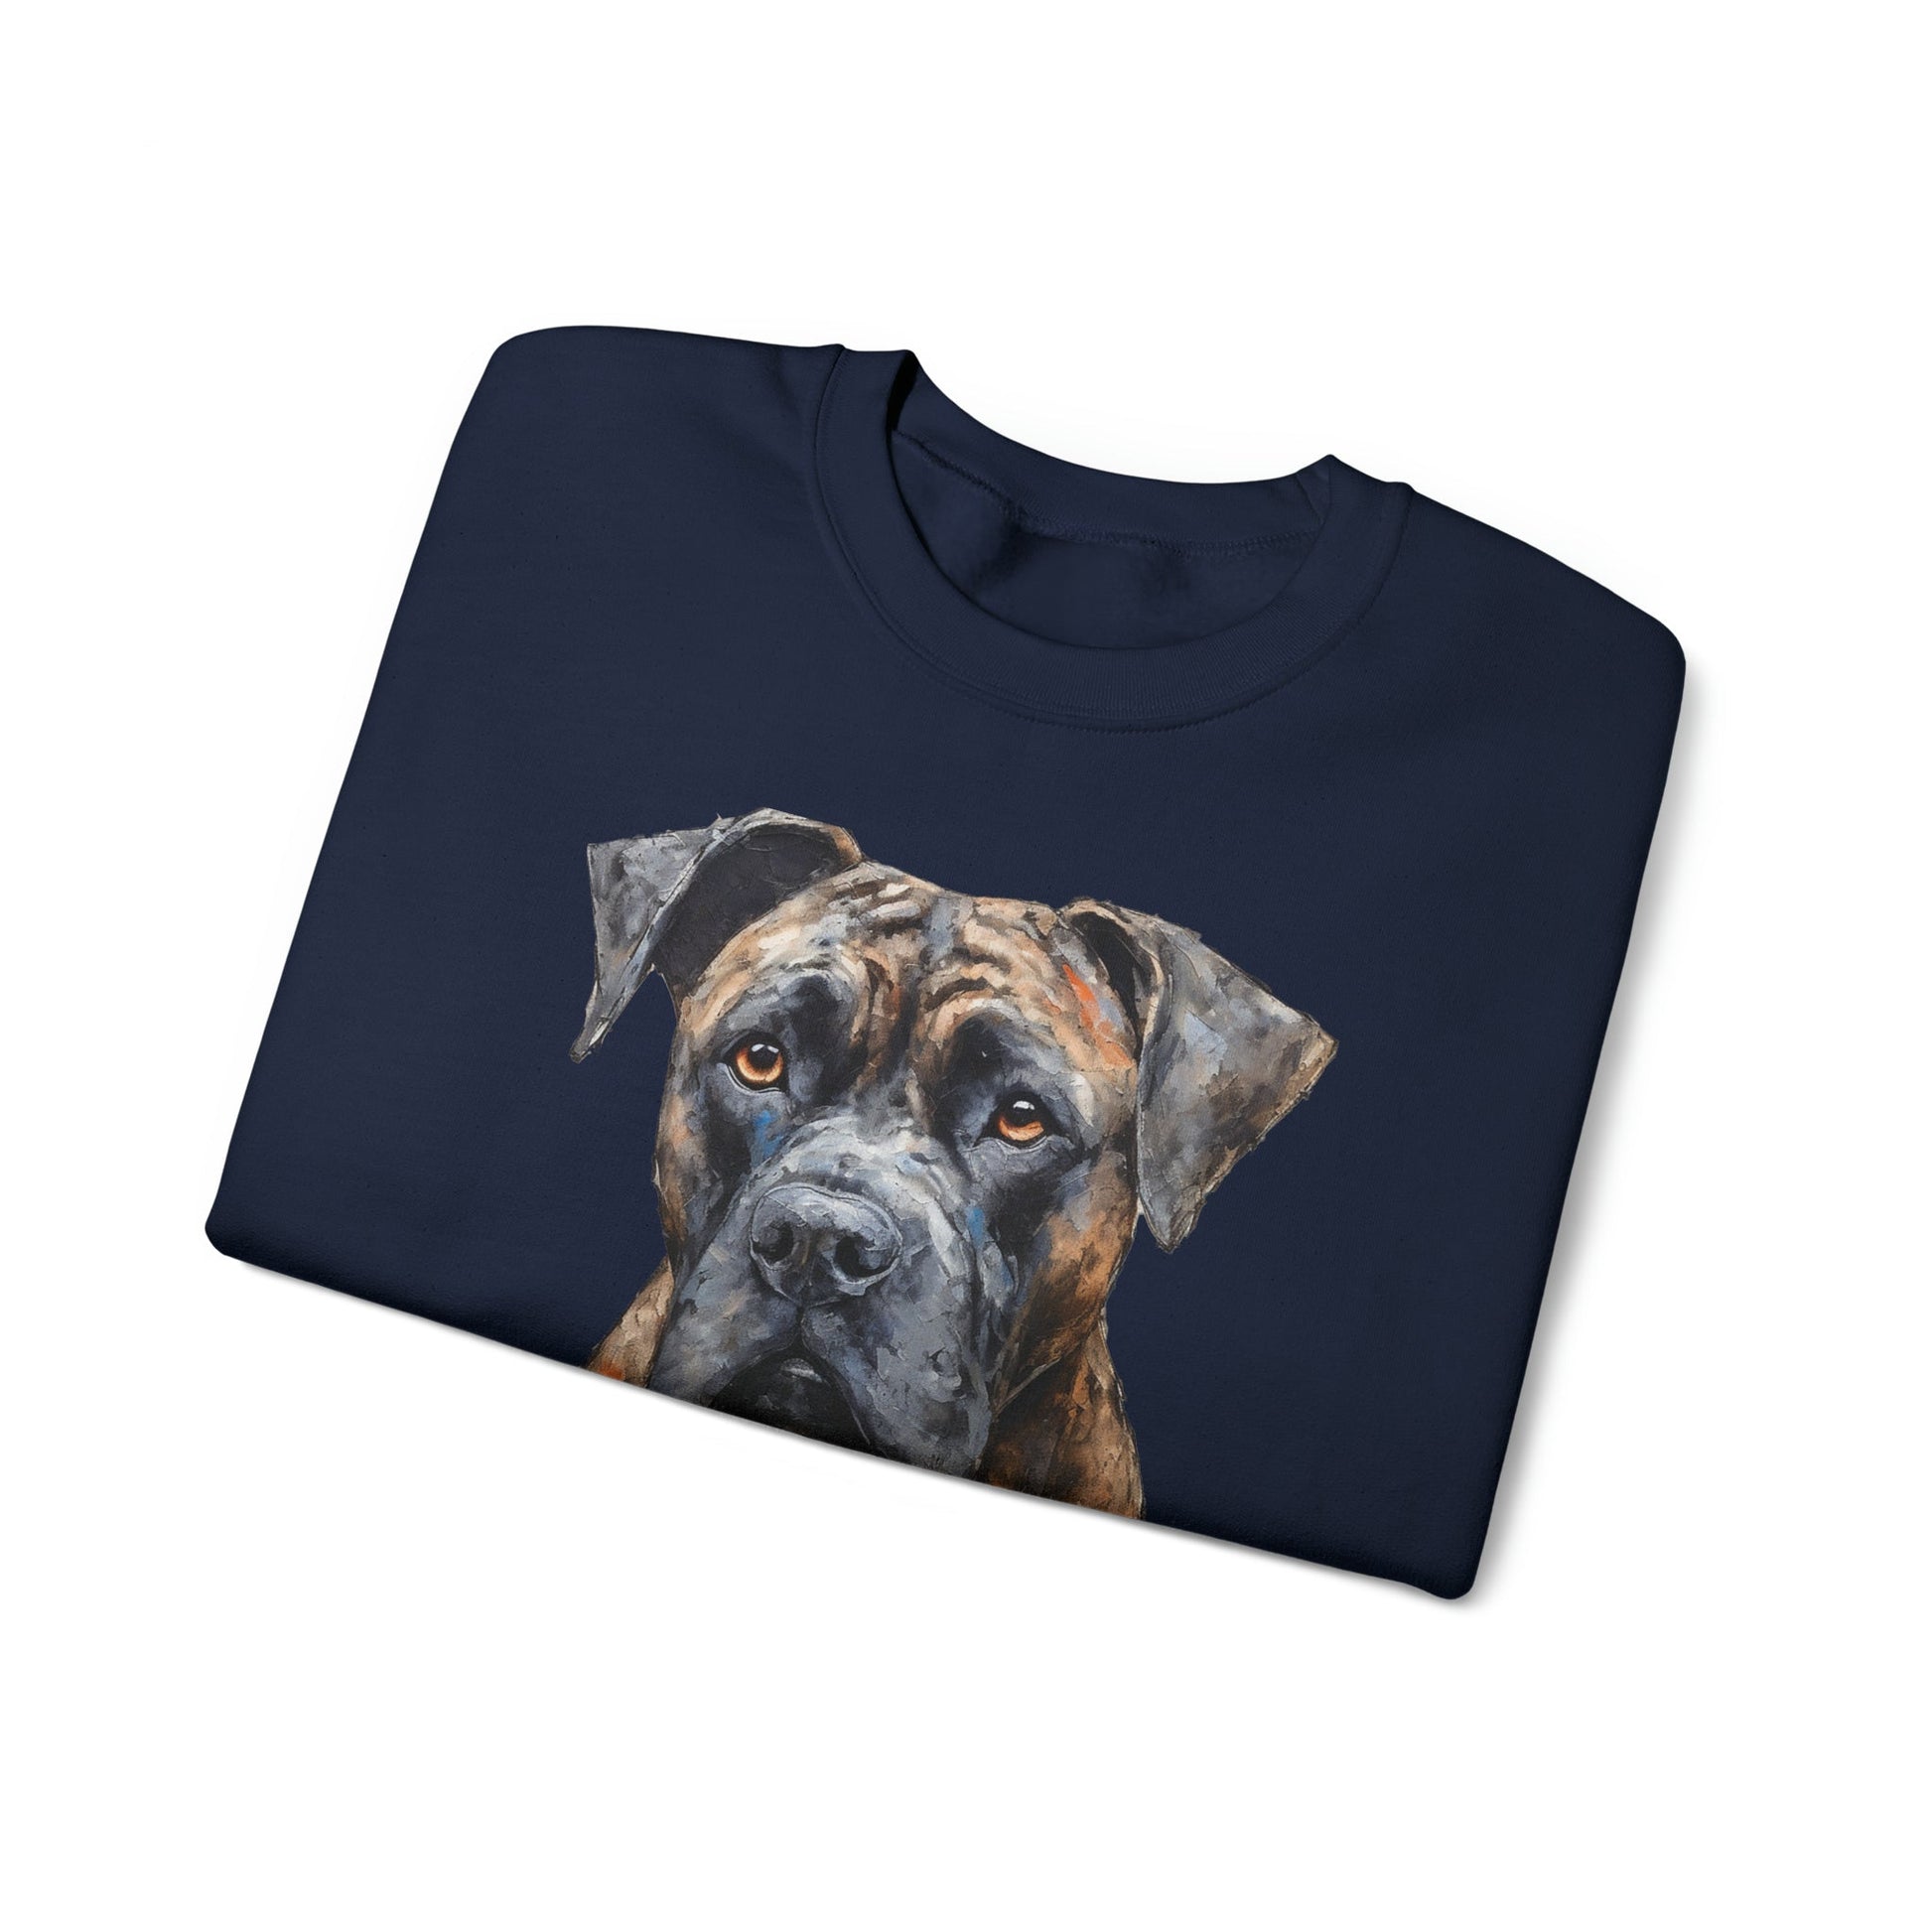 Cane Corso Art Sweatshirt or Tee, Mastiff Dog Dad, Cane Corso Mom Shirt - FlooredByArt